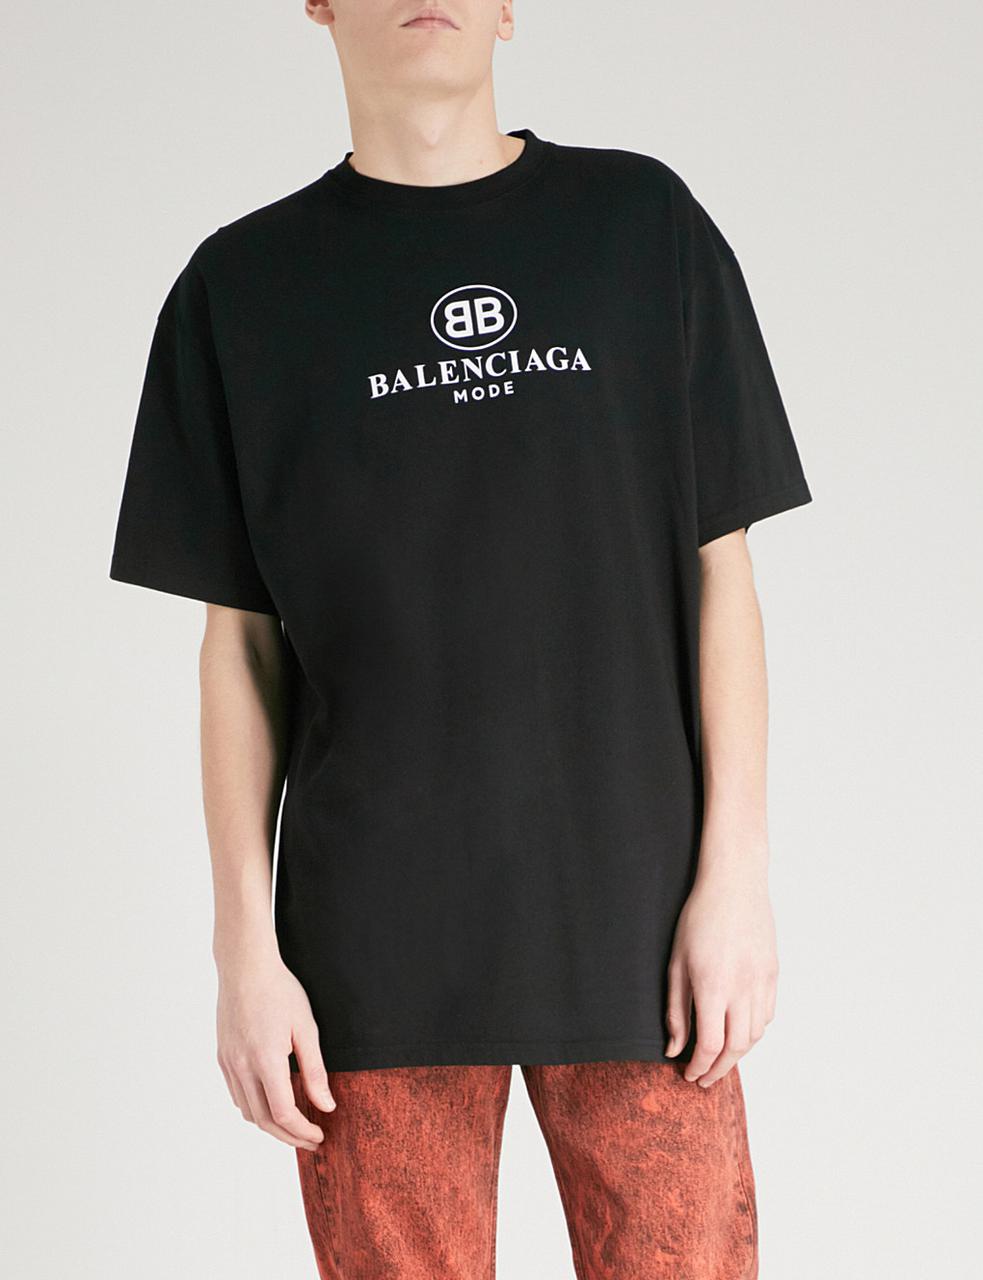 Футболка Balenciaga Mode черная с логотипом, унисекс (мужская, женская,  детская), цена 279 грн., купить в Киеве — Prom.ua (ID#680018497)